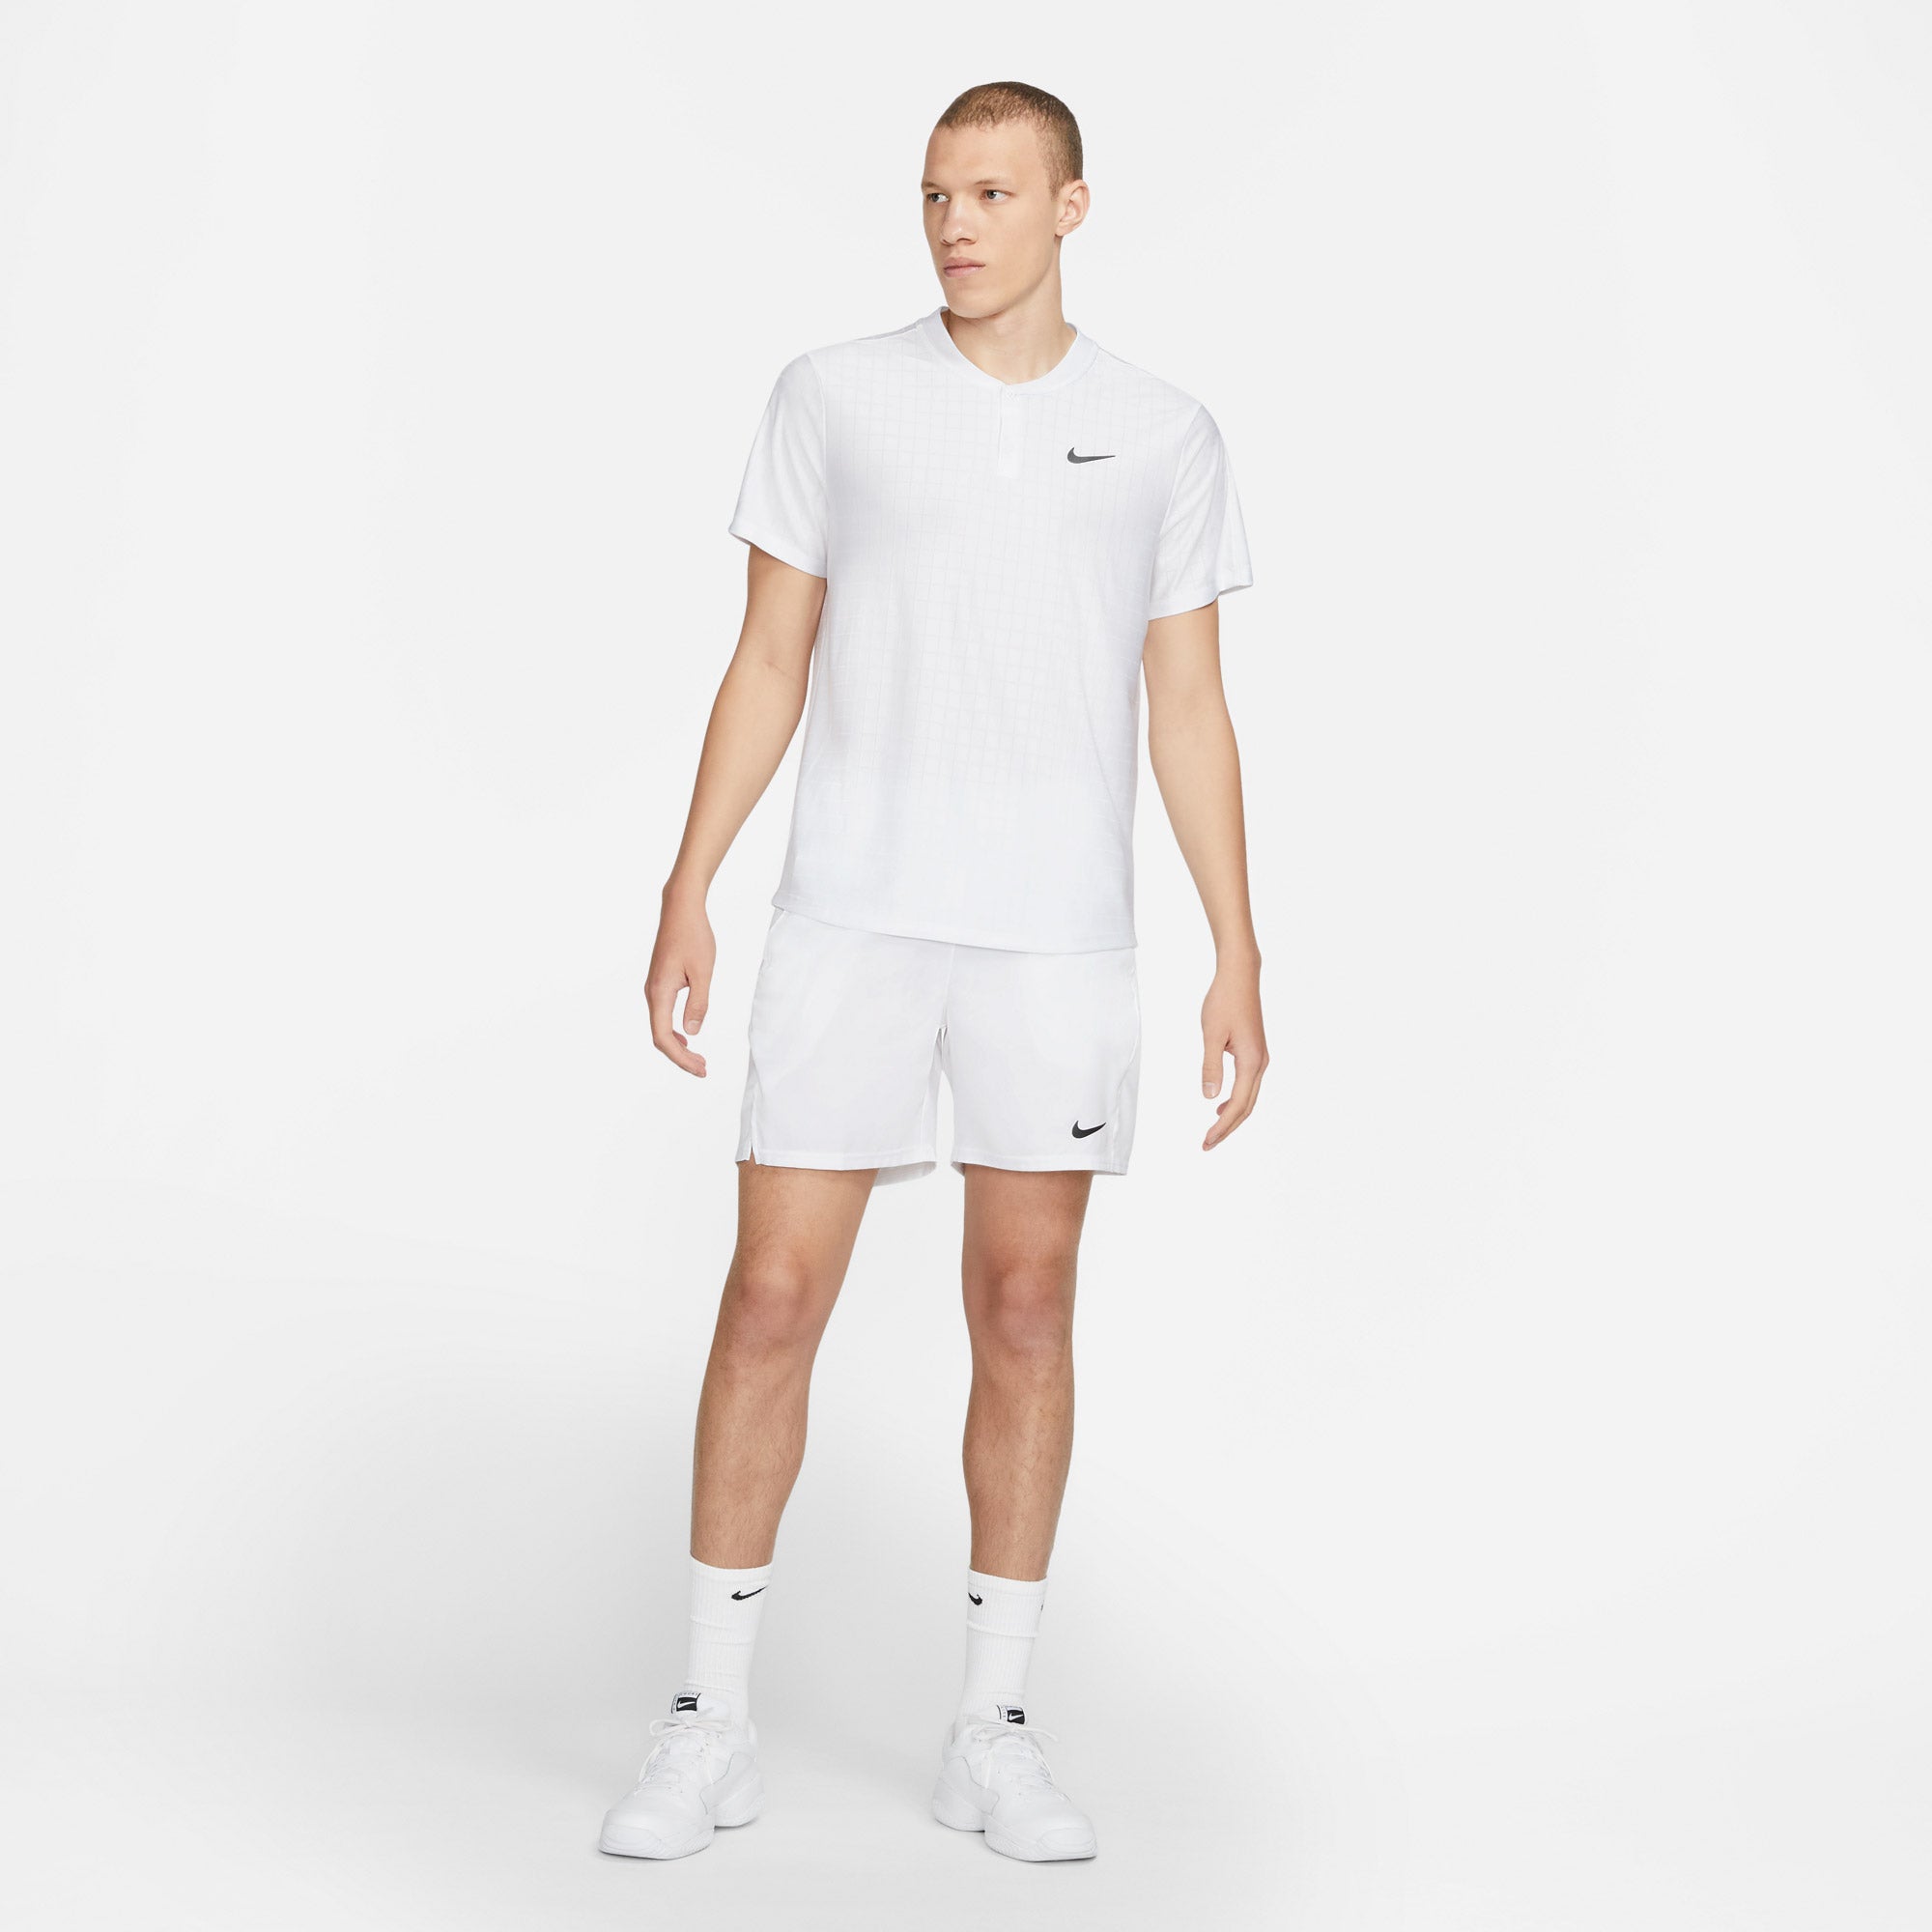 Nike Breathe Advantage Men's Tennis Polo White (3)